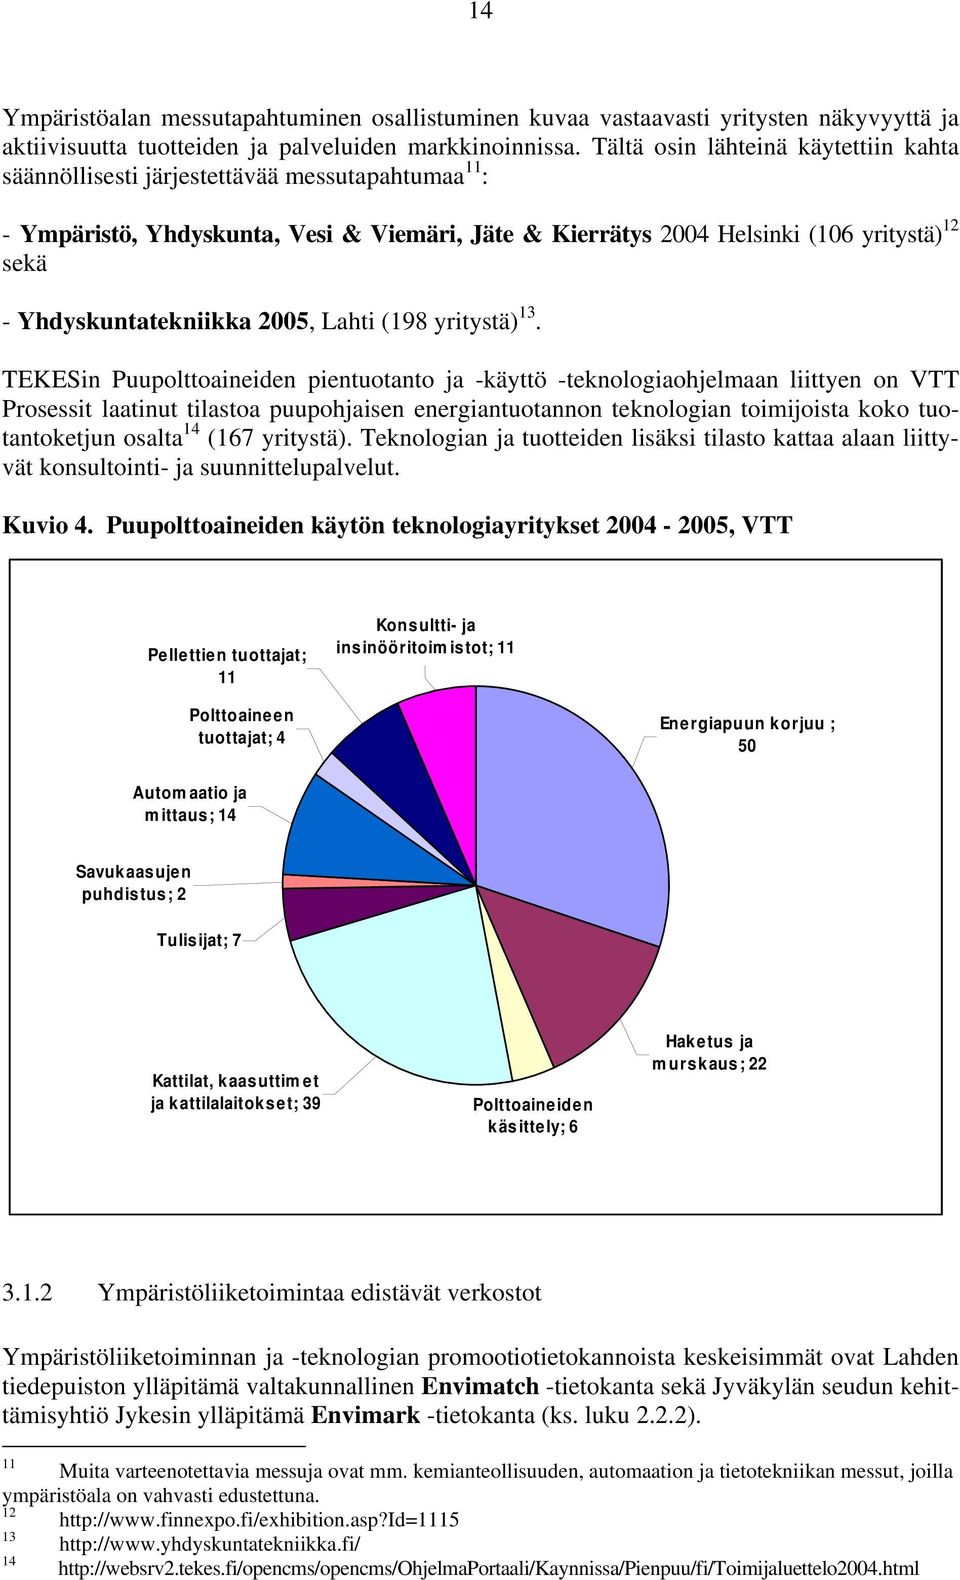 Yhdyskuntatekniikka 2005, Lahti (198 yritystä) 13.